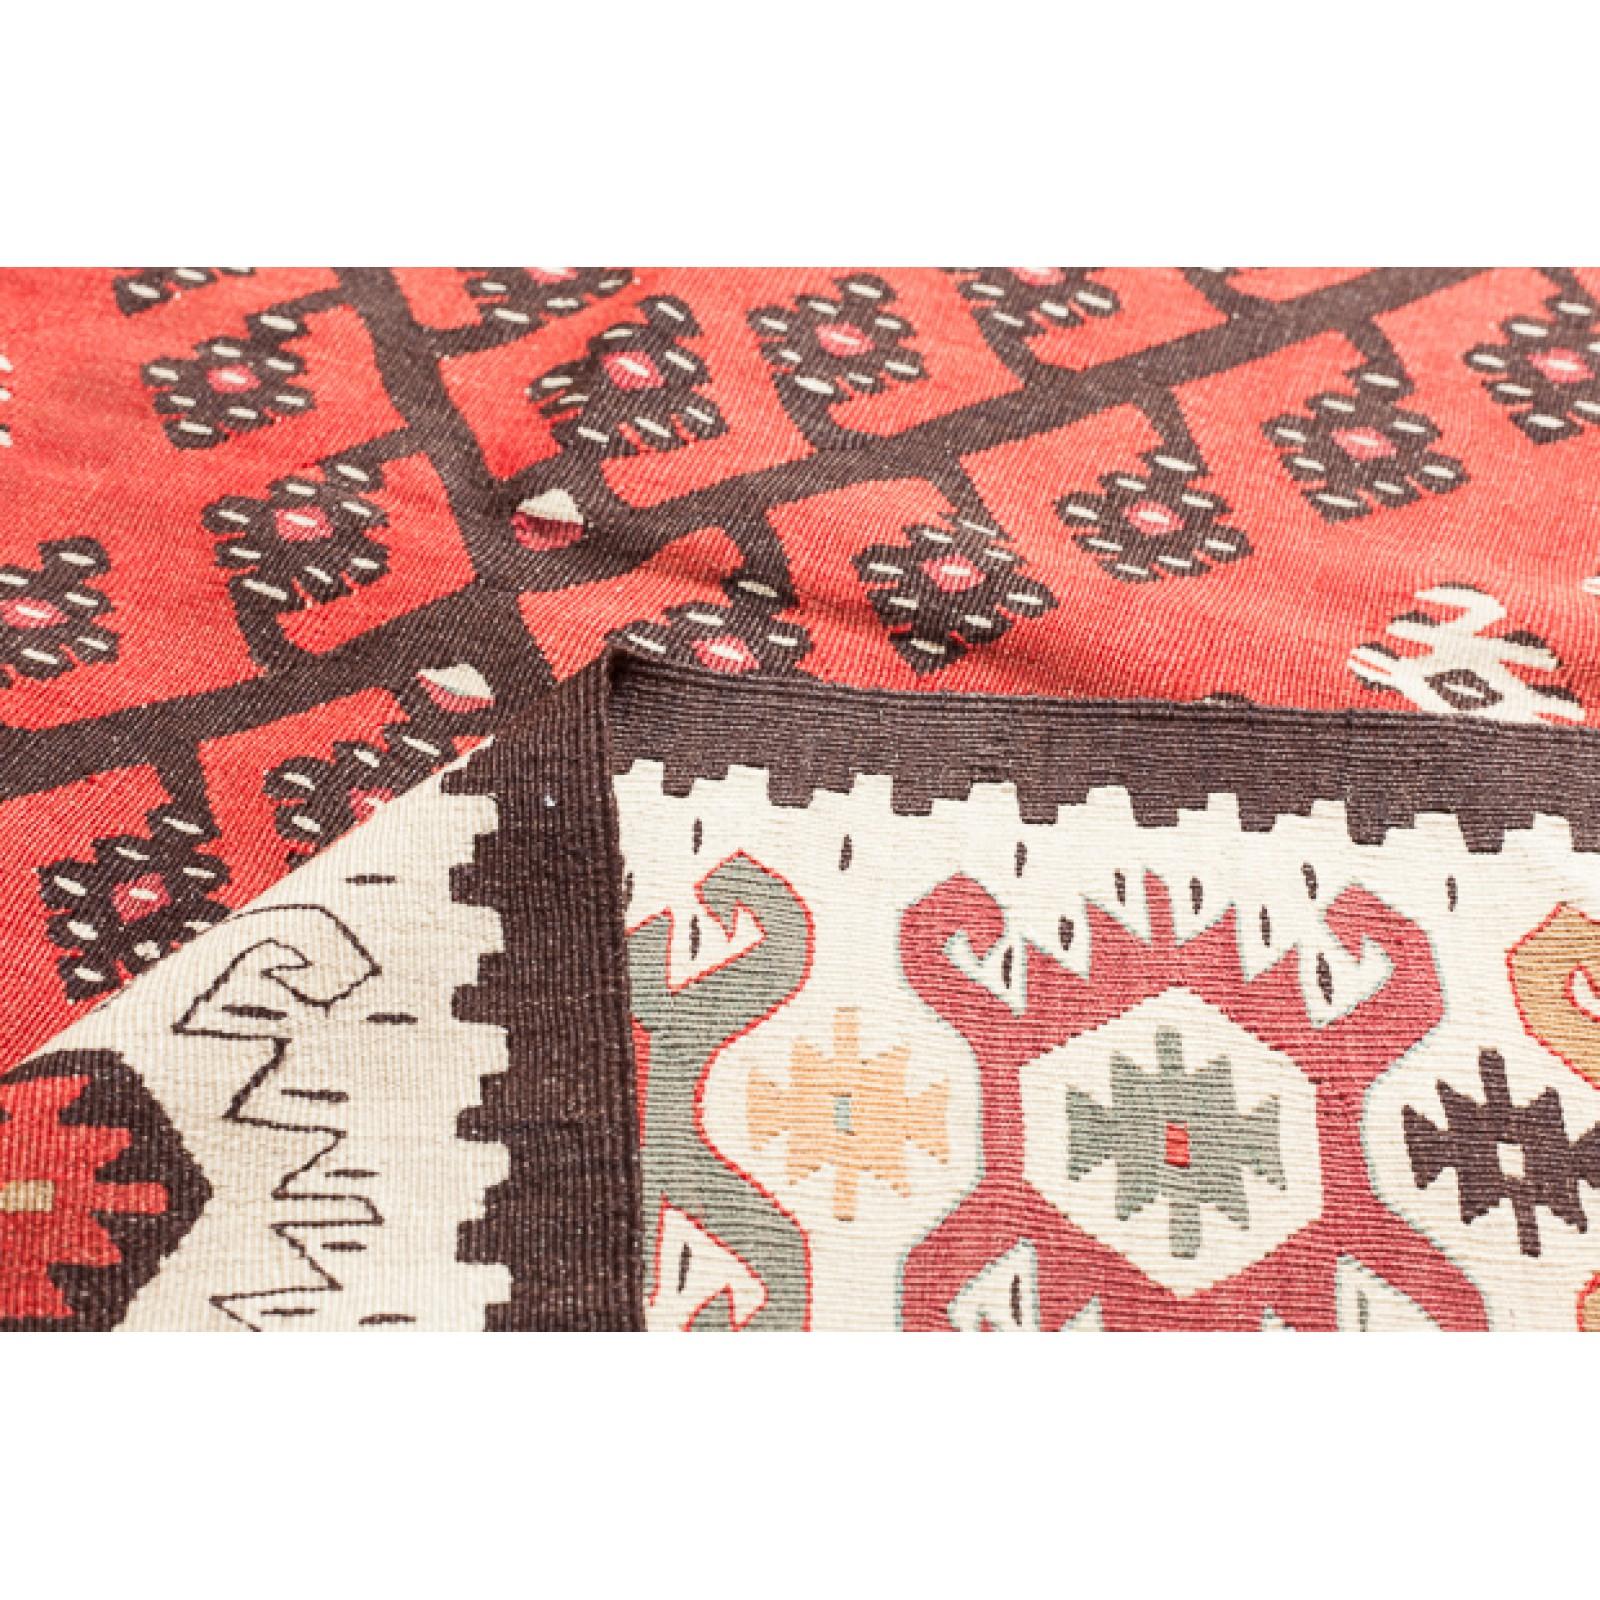 Dies ist ein Vintage Unique Sarkoy (Sharkoy oder Sarköy) Kilim Teppich aus der Westtürkei mit einer seltenen und schönen Farbe Zusammensetzung.

Sarkoy-Kelims sind sehr fein in Schlitzwebart in verschiedenen Größen gewebt und werden in einem Stück